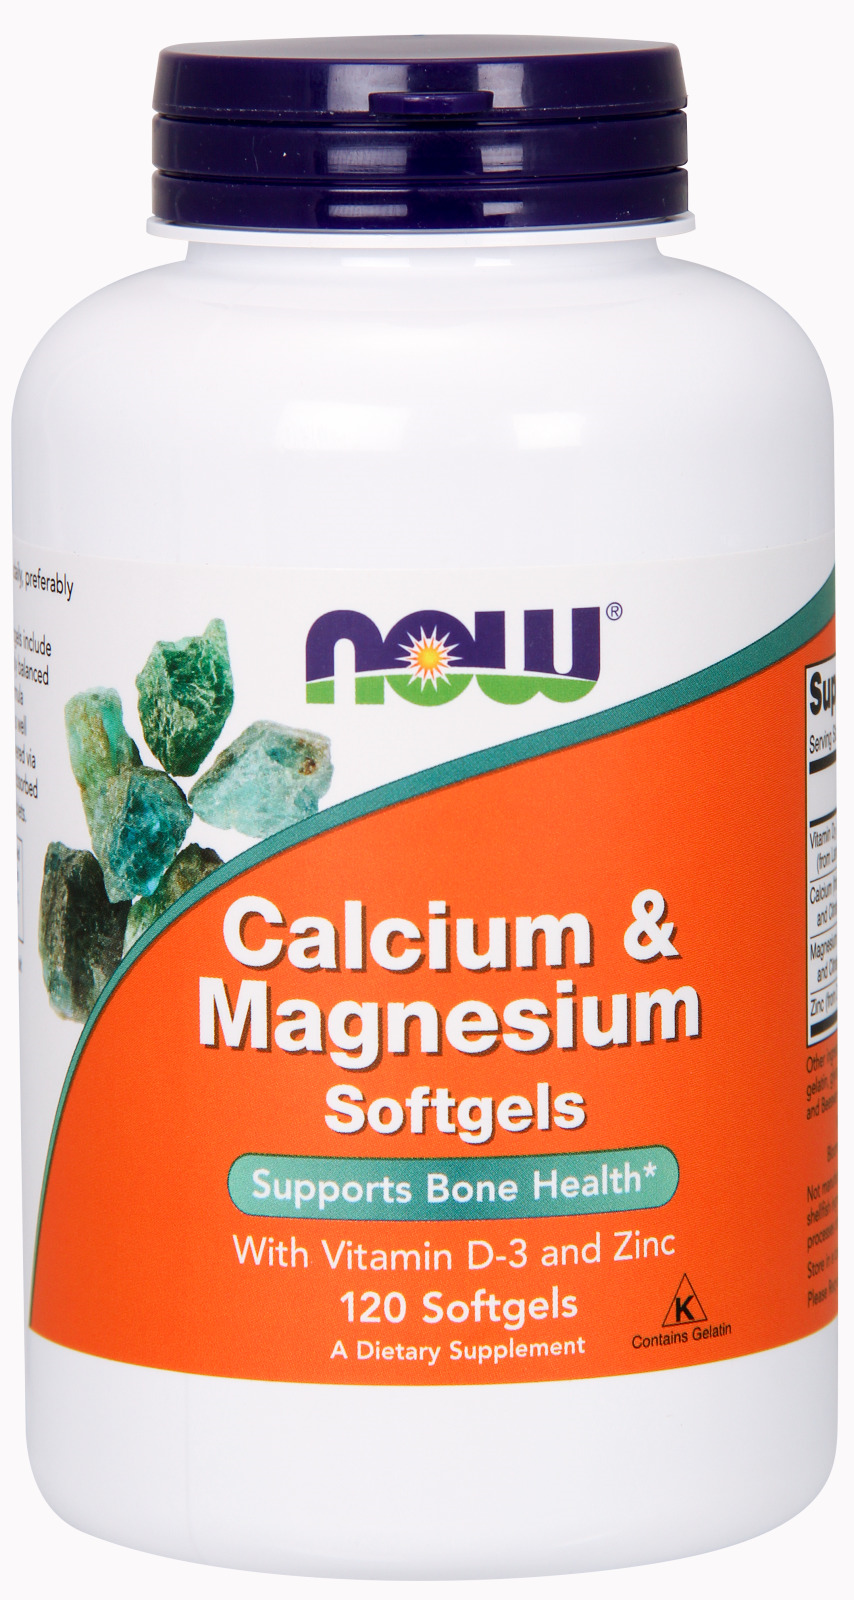 Calcium & Magnesium Softgels - The Daily Apple